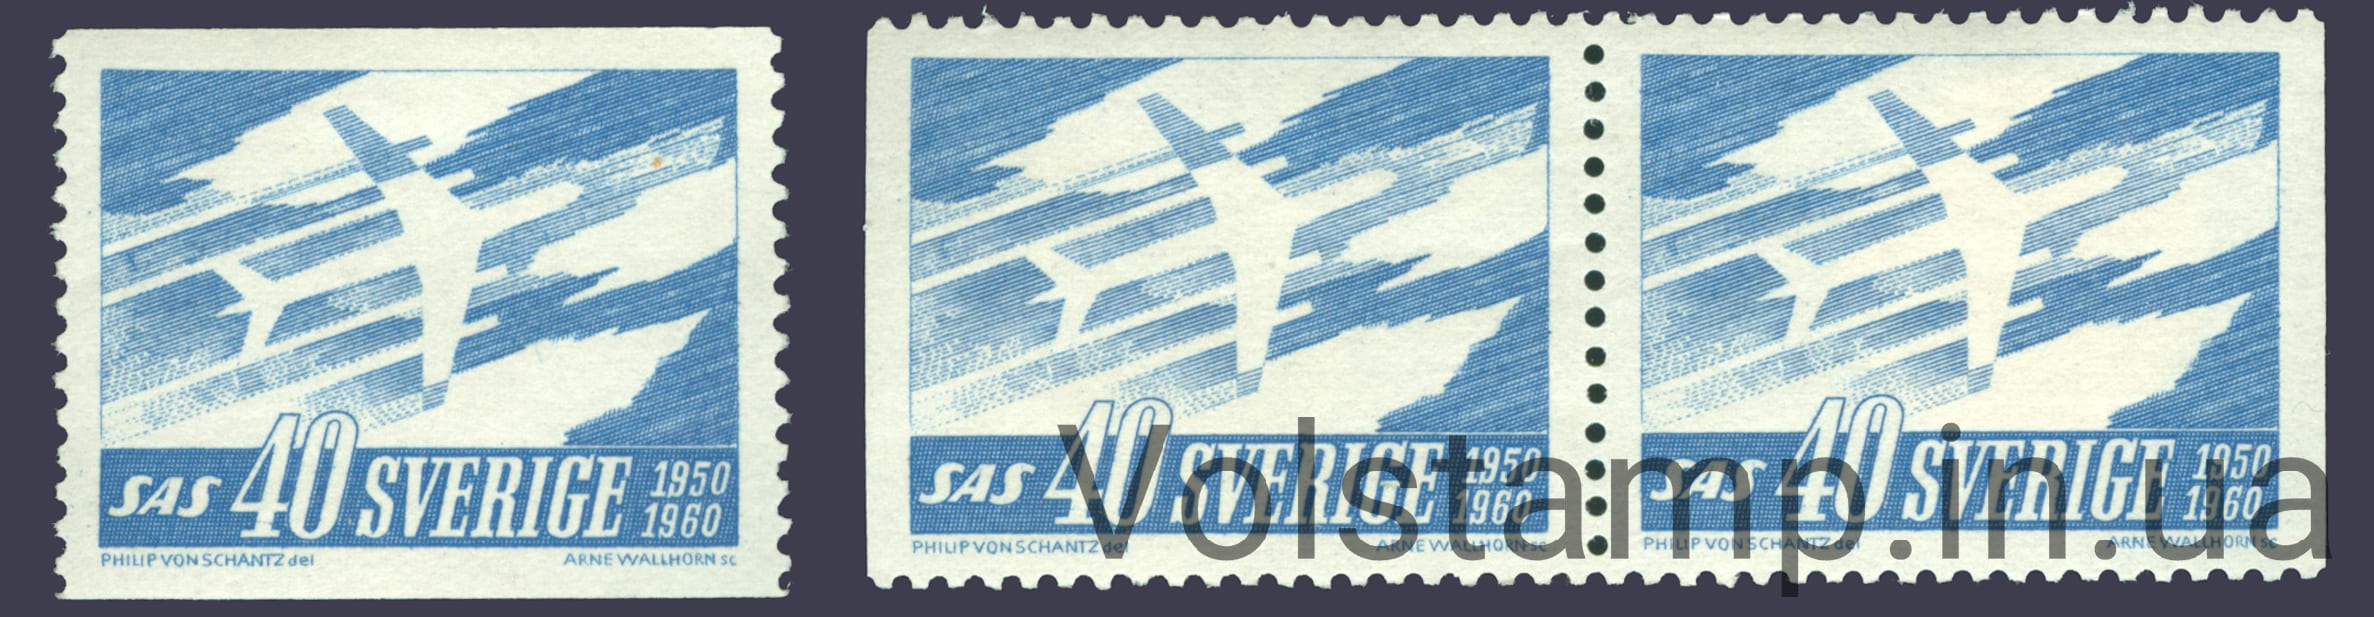 1961 Швеция Серия марок (Авиация, самолет) MNH №467 AD lDr